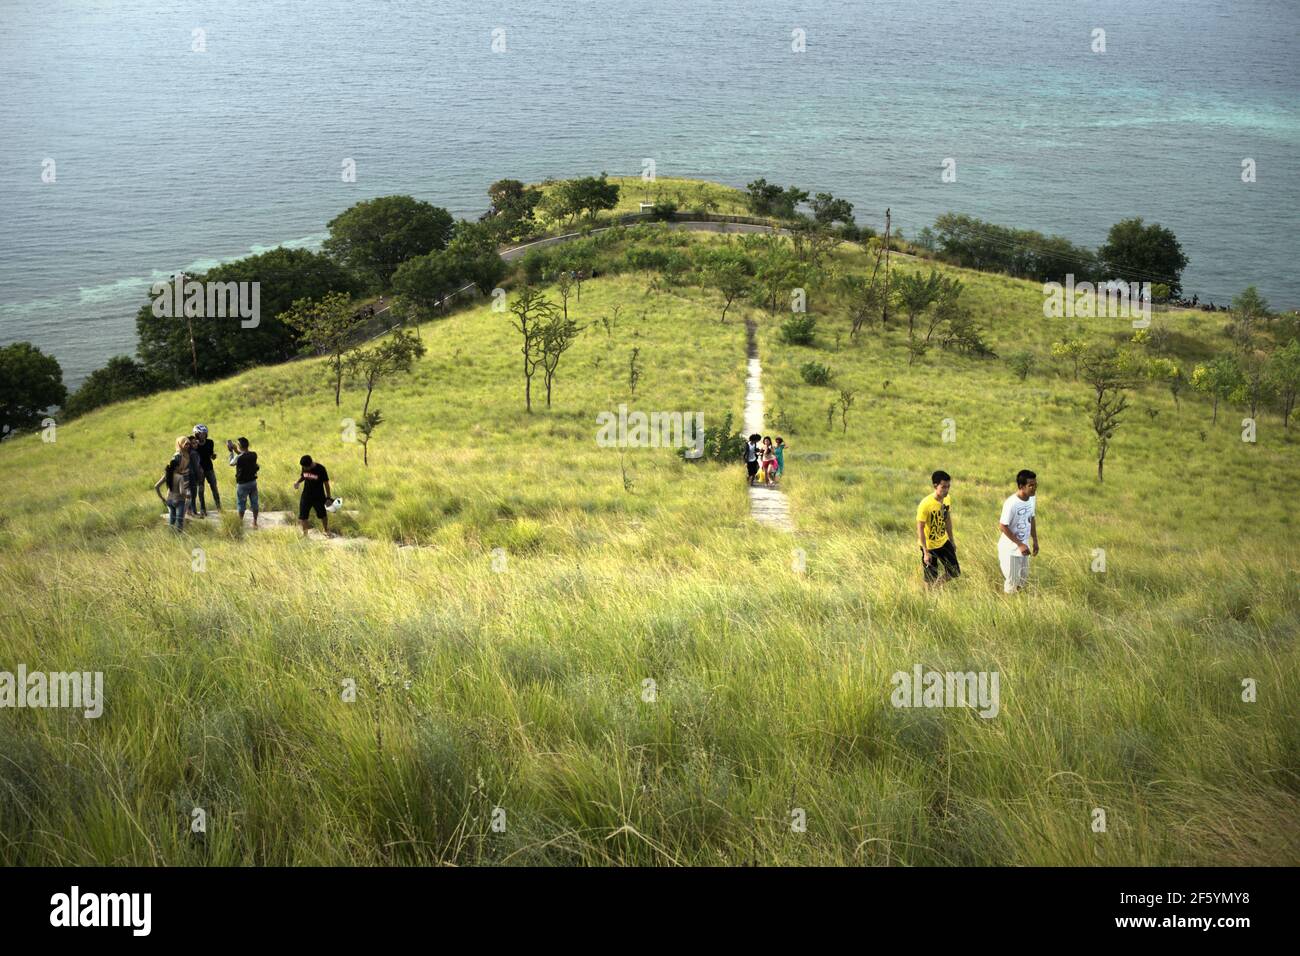 Les jeunes qui ont du temps de loisirs en marchant sur des marches lapidées à travers les prairies à Kajuwulu près de Maumere, île de Flores. Banque D'Images